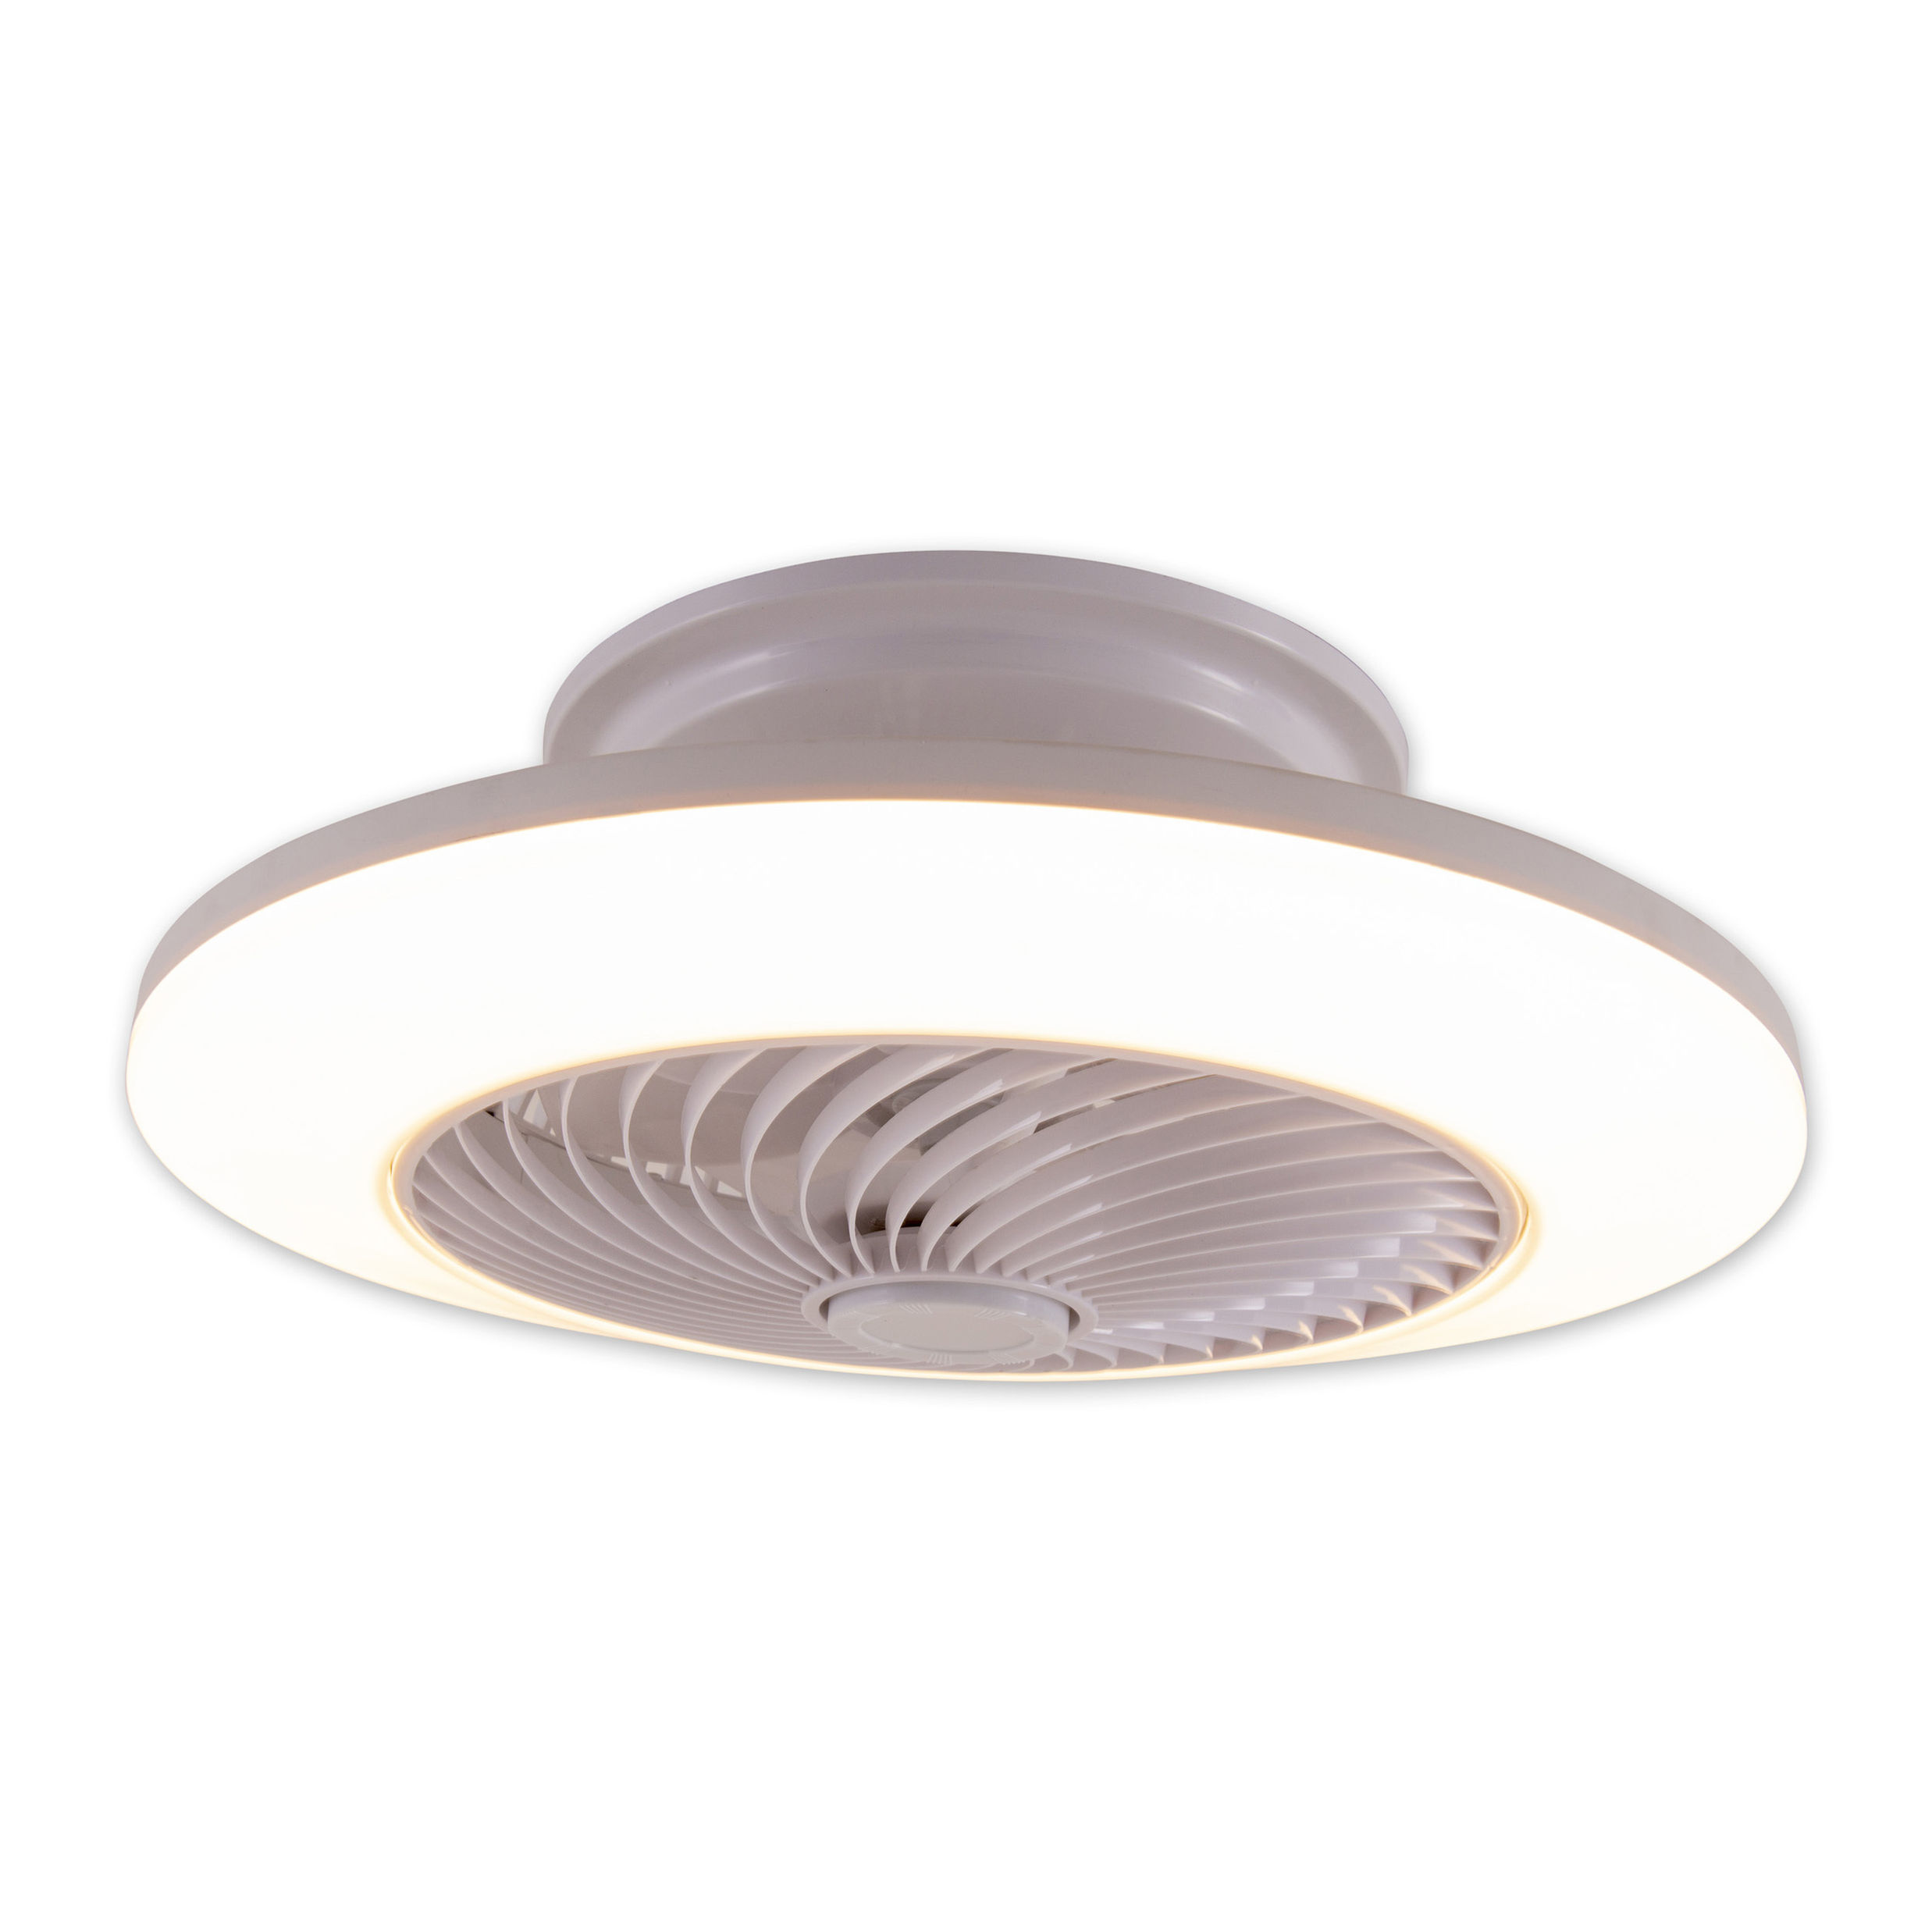 Näve Leuchten LED Deckenleuchte mit Ventilator Adoranto d: 55cm Farbe: weiß  | Weltbild.de